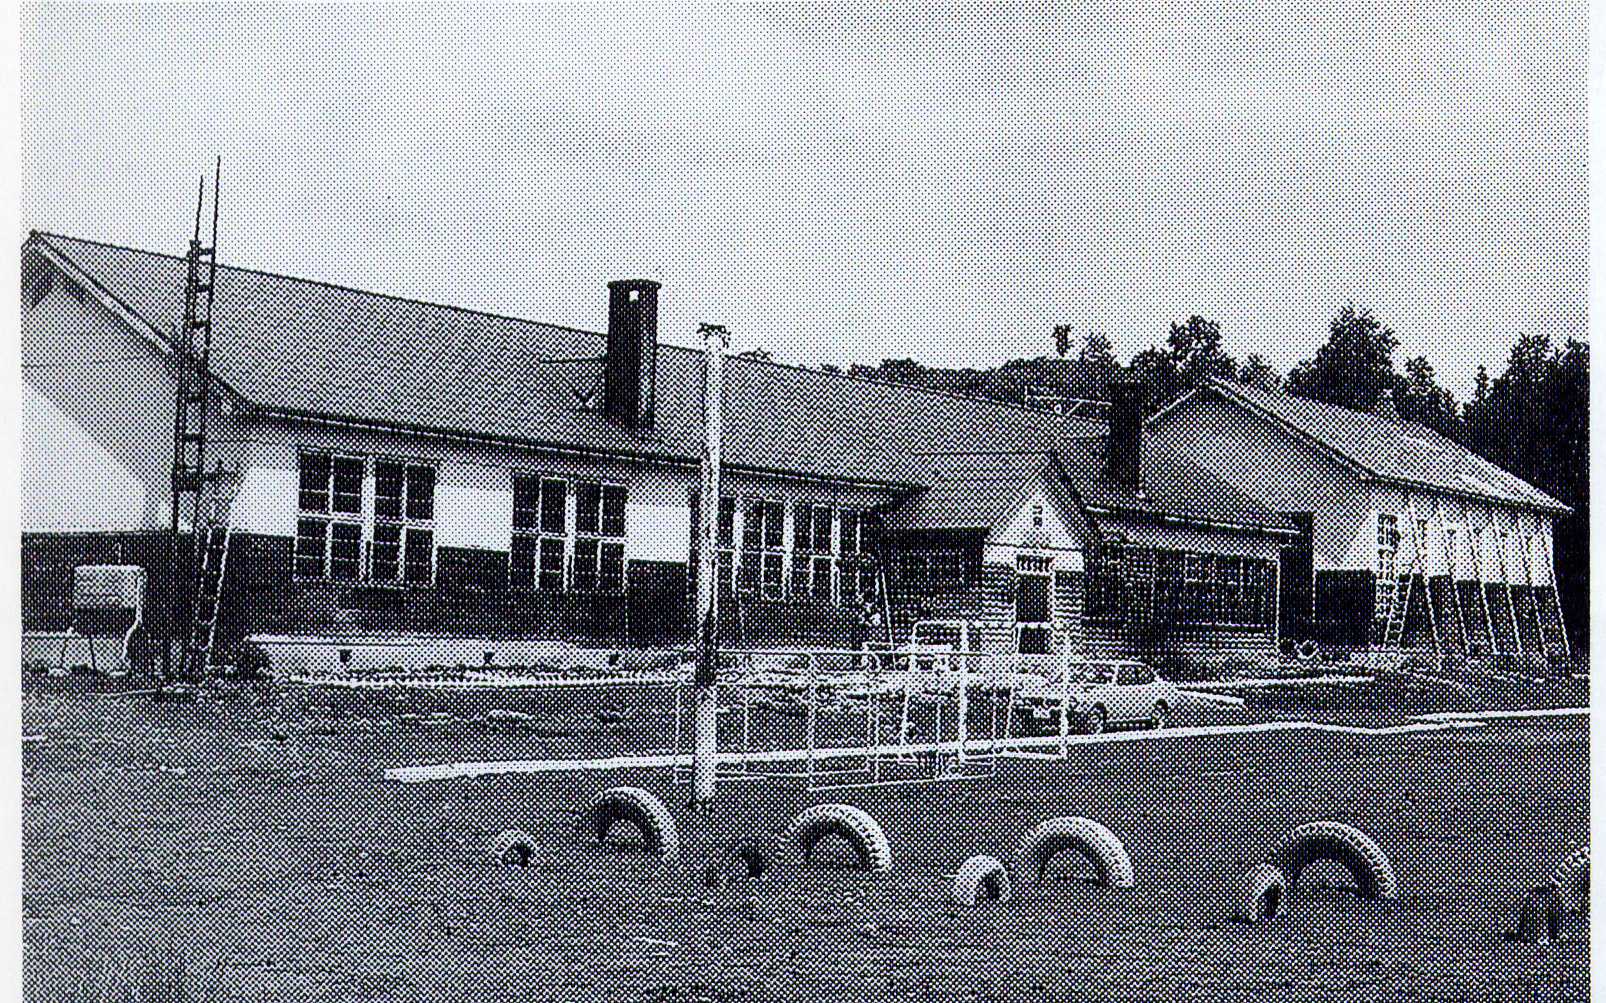 屋根の左右に煙突が設置された旧北温小学校校舎をタイヤ遊具が設置された校庭から撮影した白黒写真